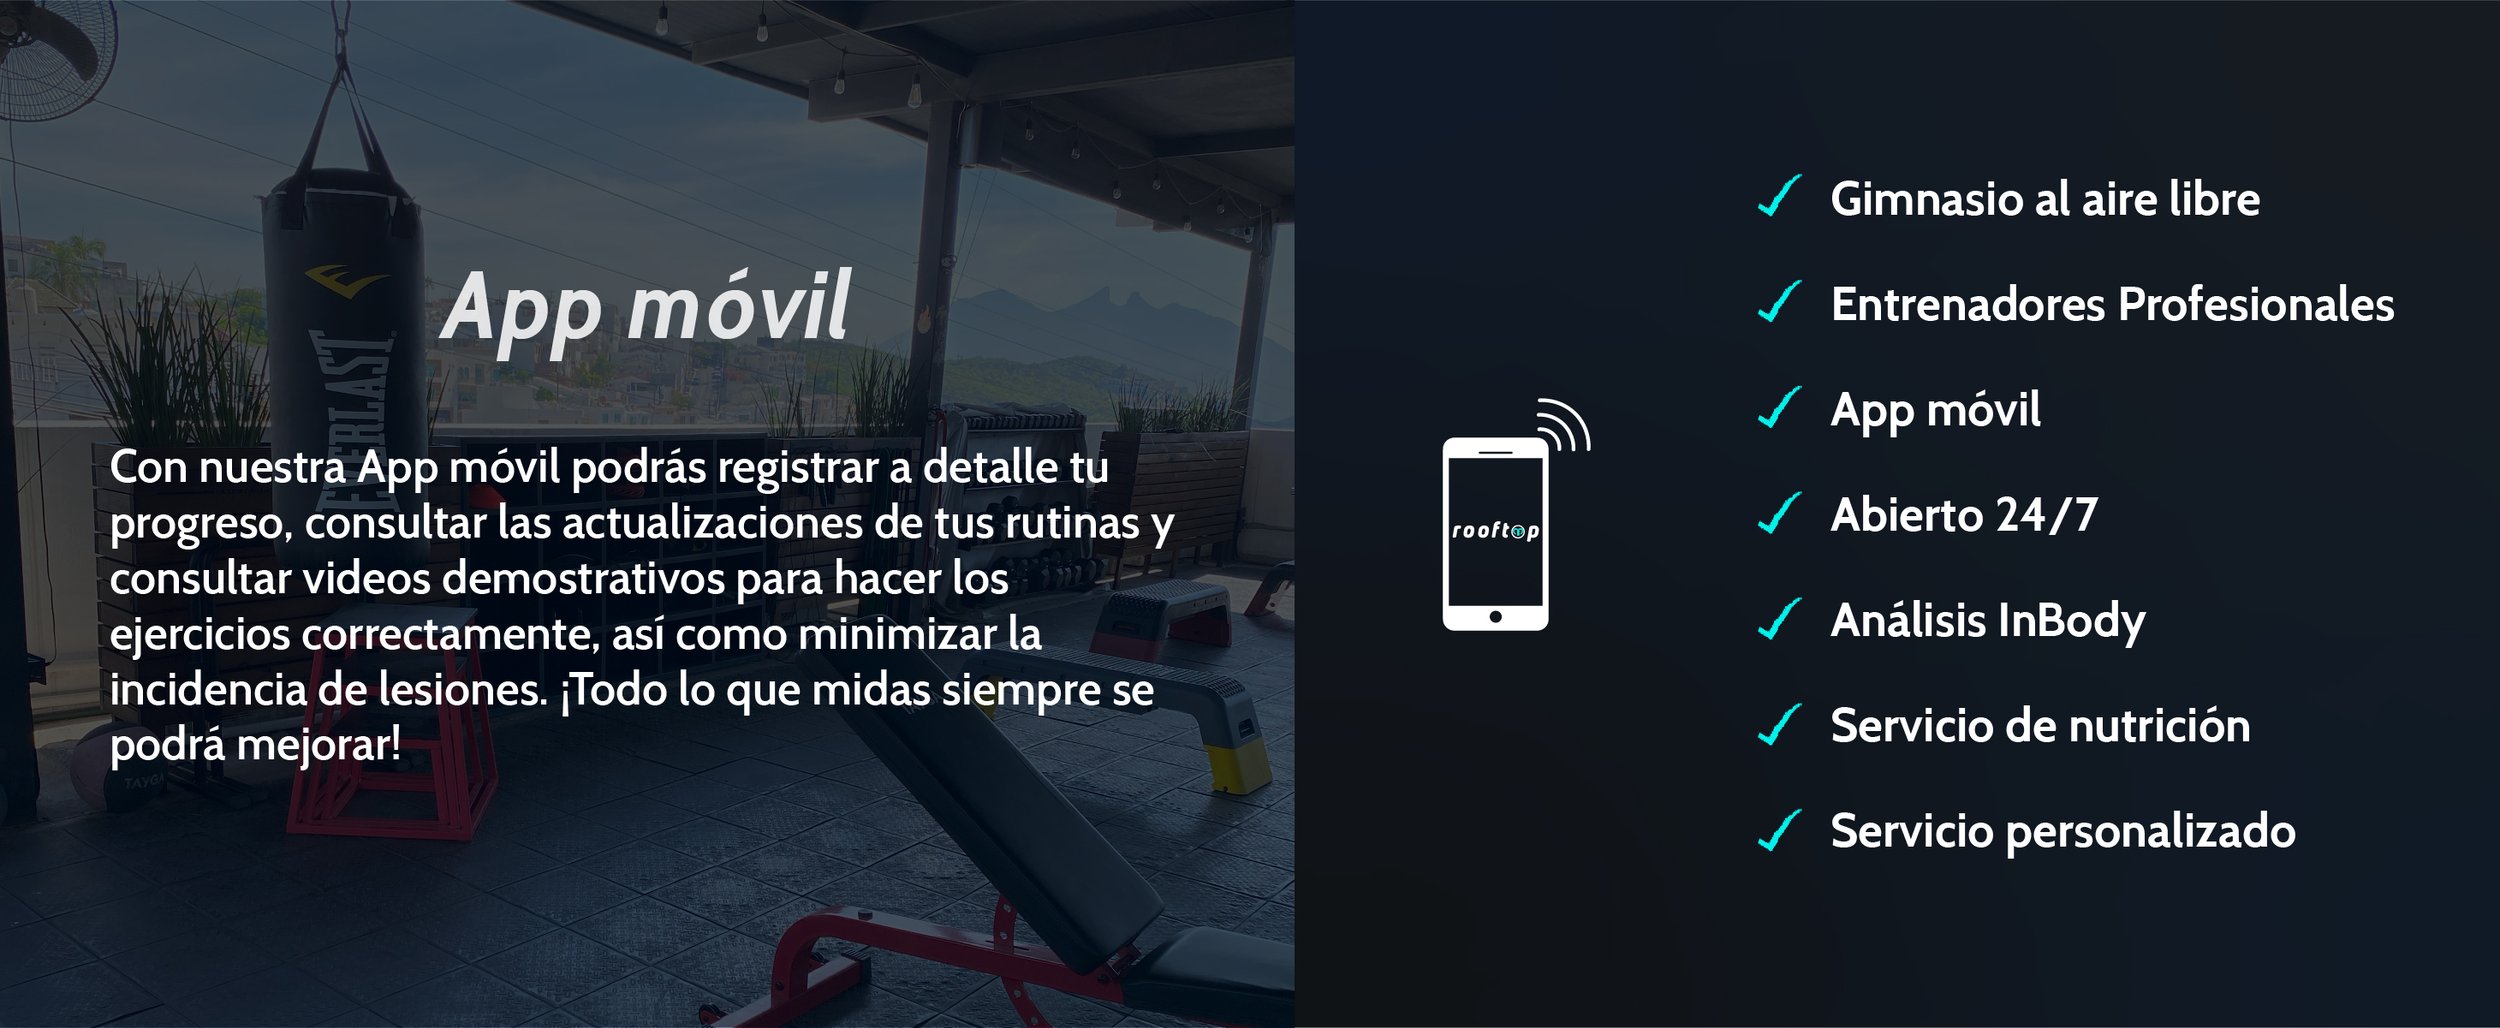 App movil-100.jpg